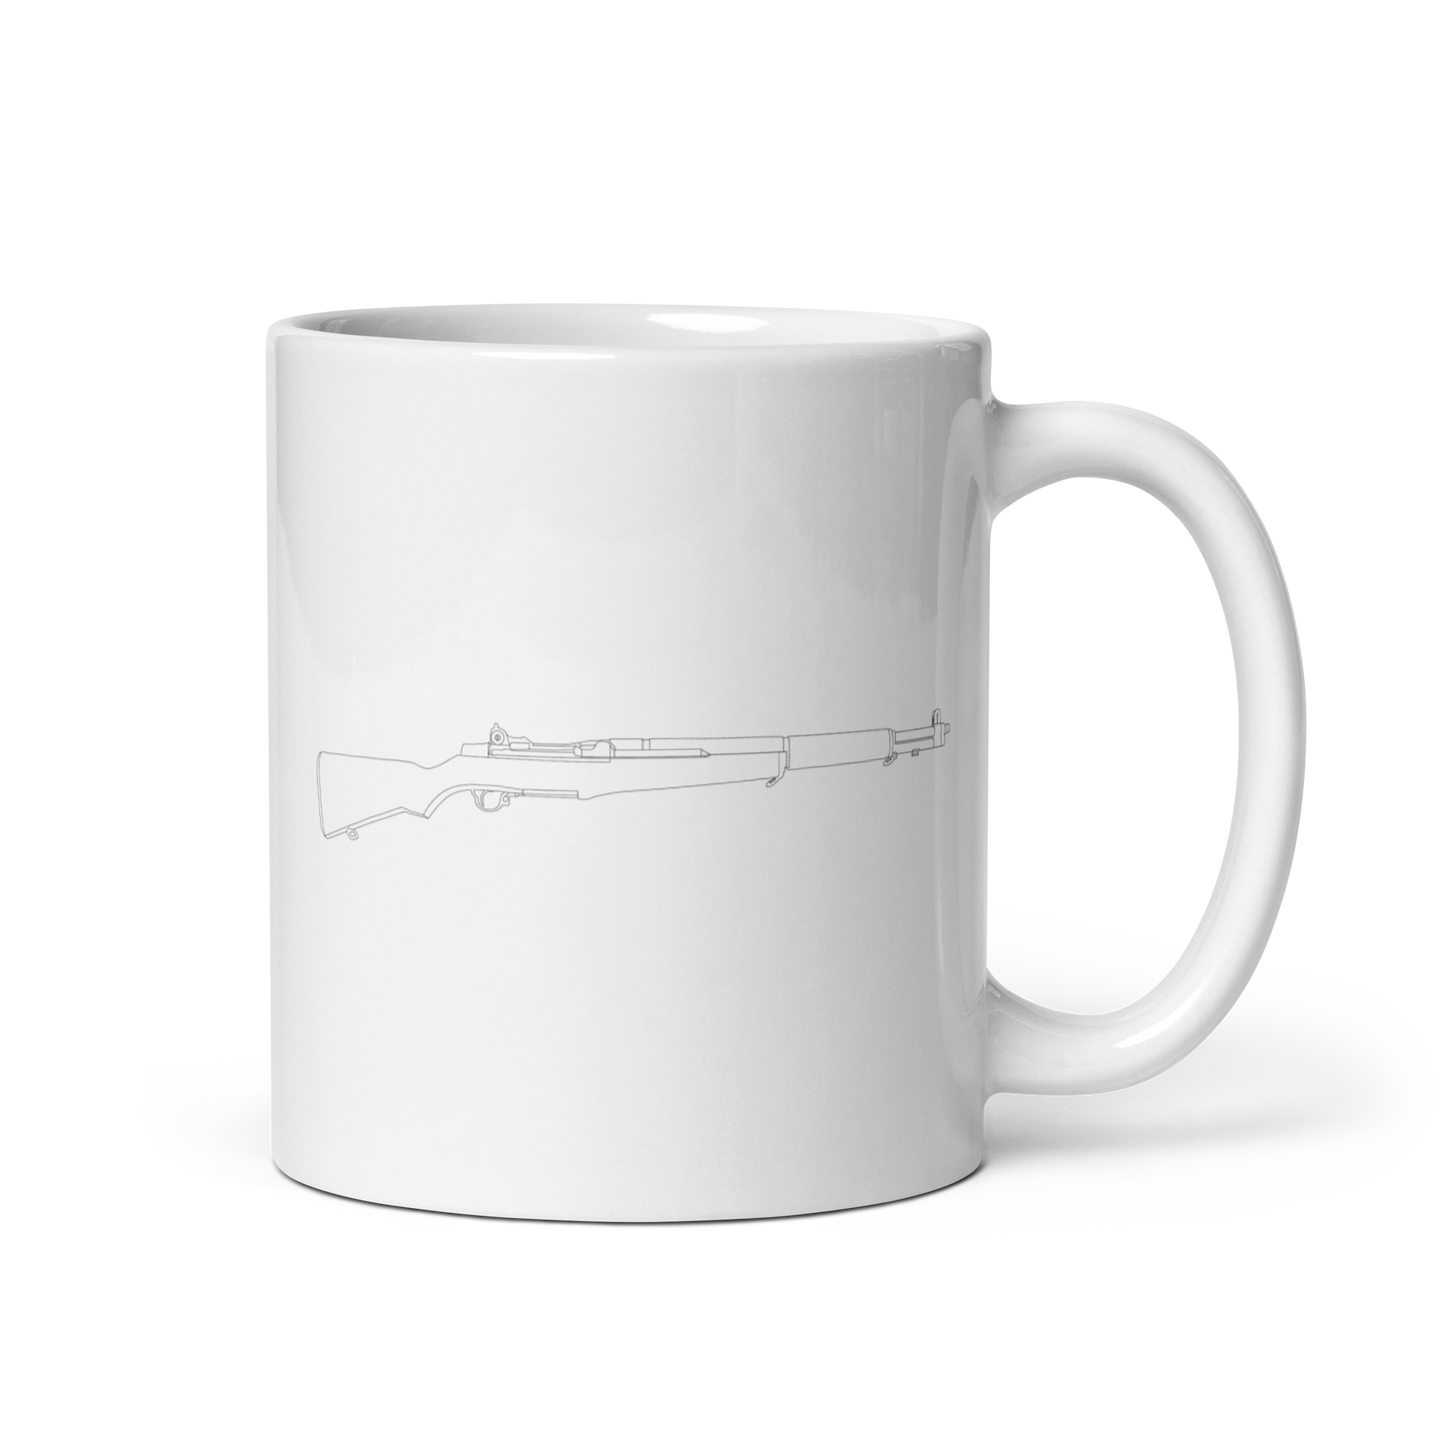 M1 Garand Mug